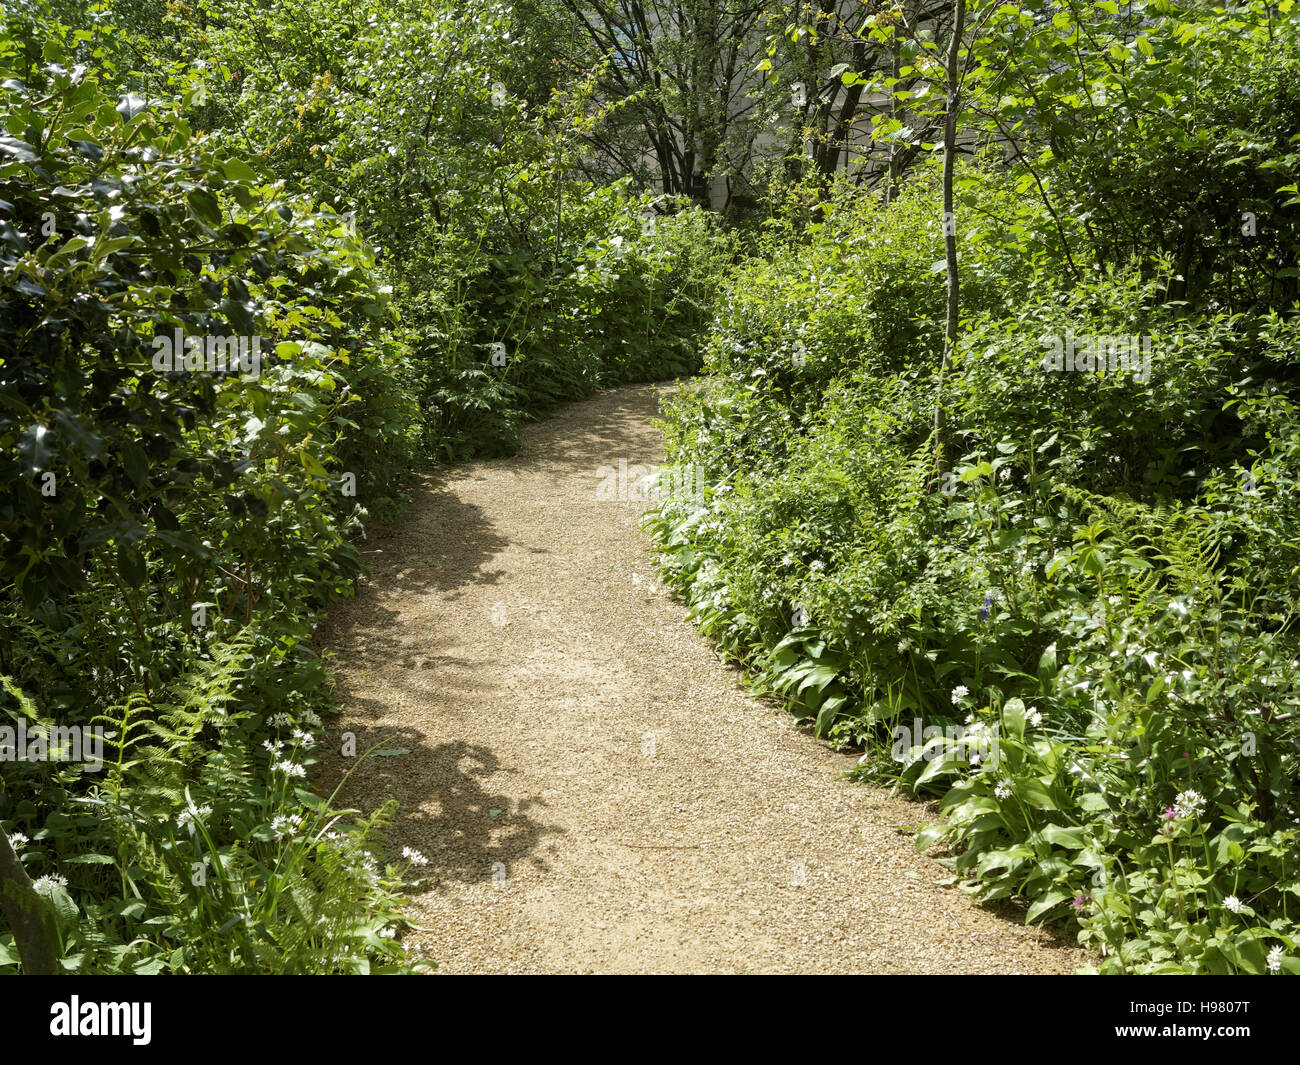 Scena di bosco verde estate con il percorso e il verde degli alberi leafed Foto Stock